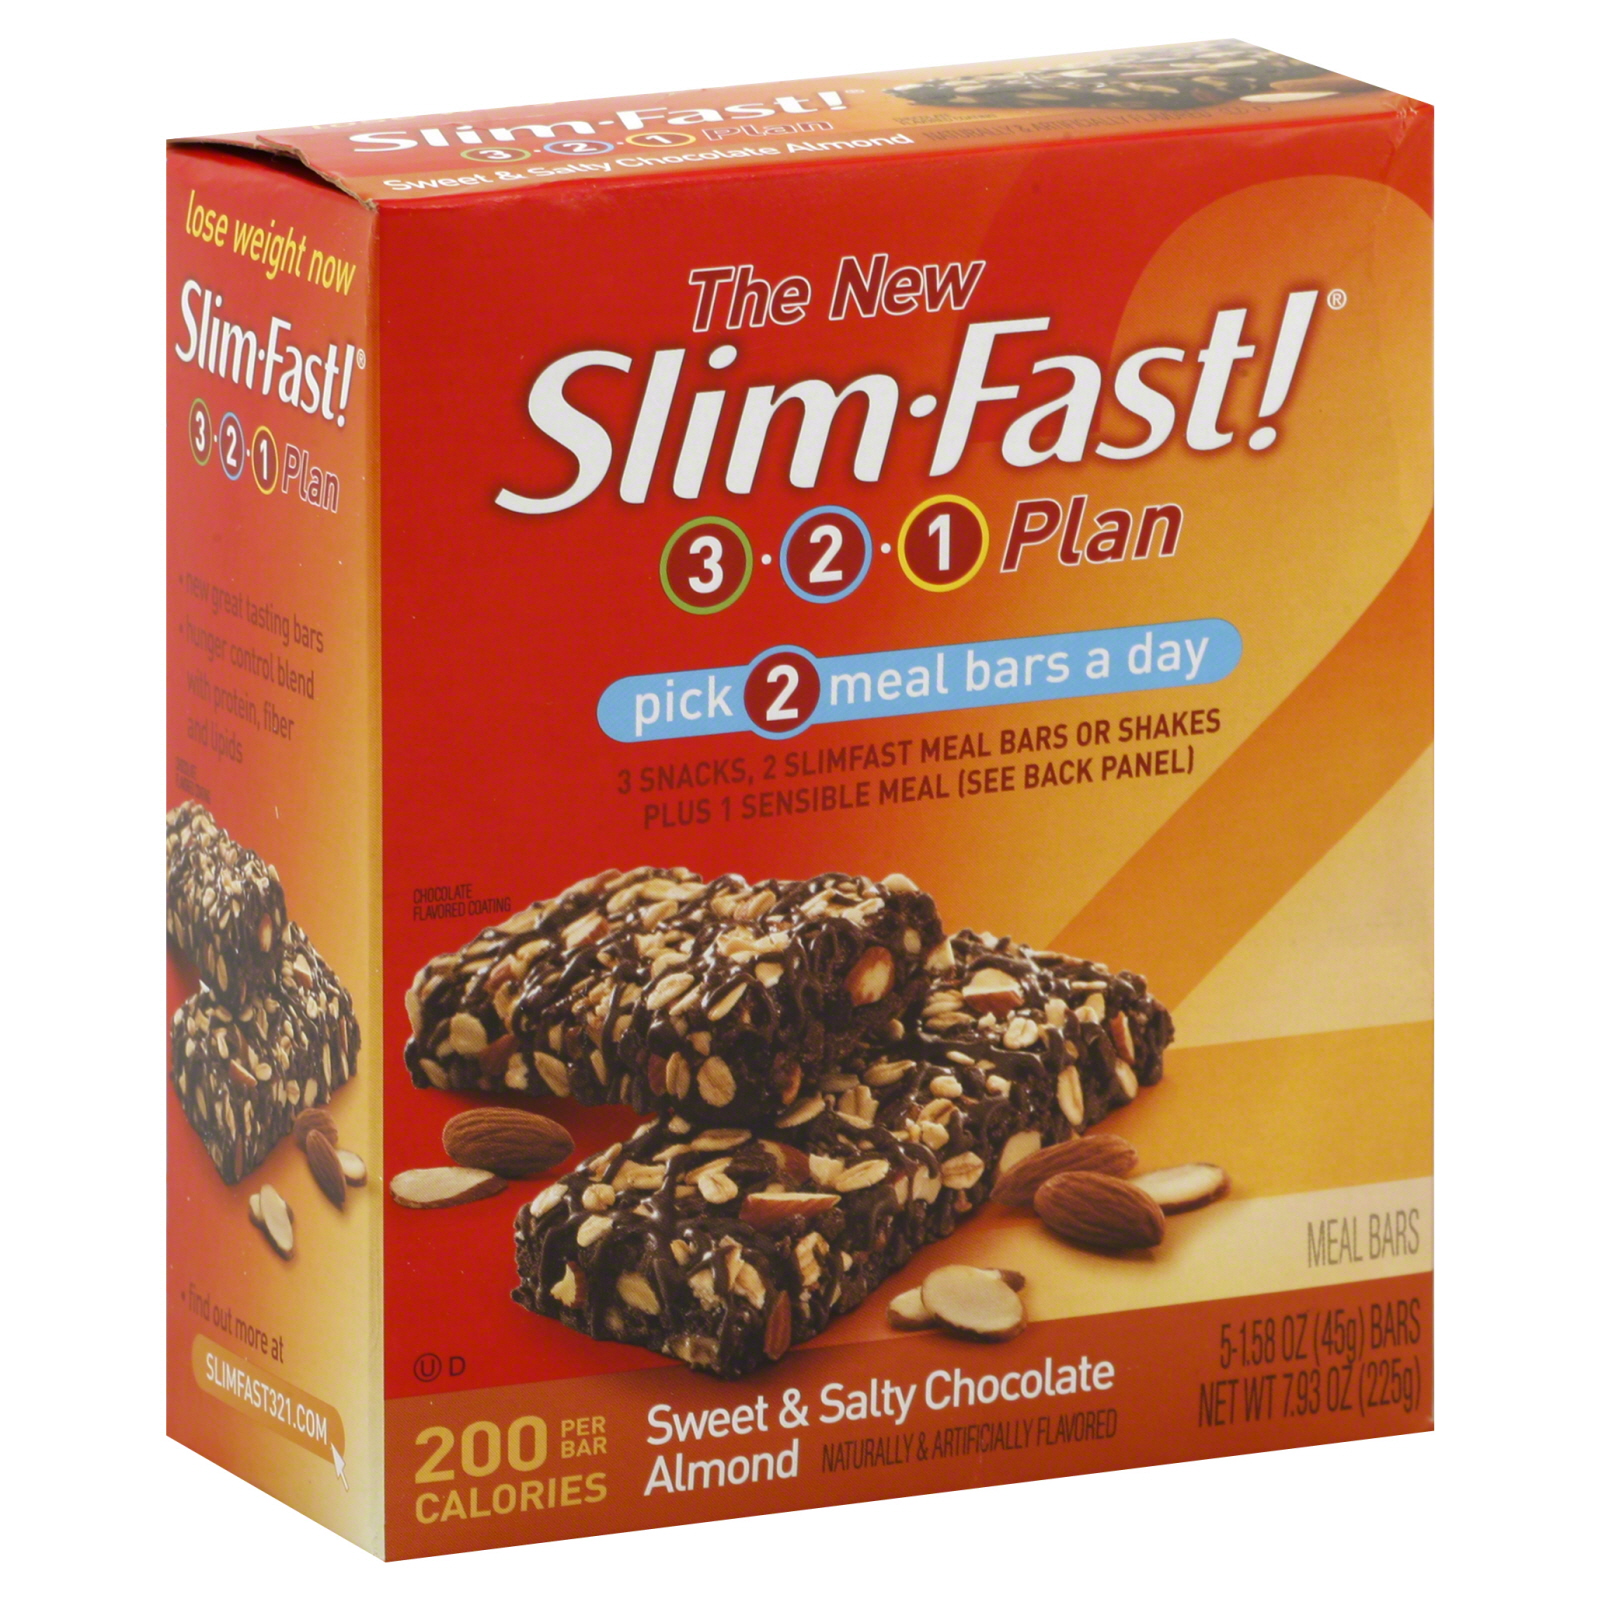 3-2-1 Plan Meal Bars, Sweet & Salty Chocolate Almond, 5 - 1.58 oz (45 g) bars [7.93 oz (225 g)]